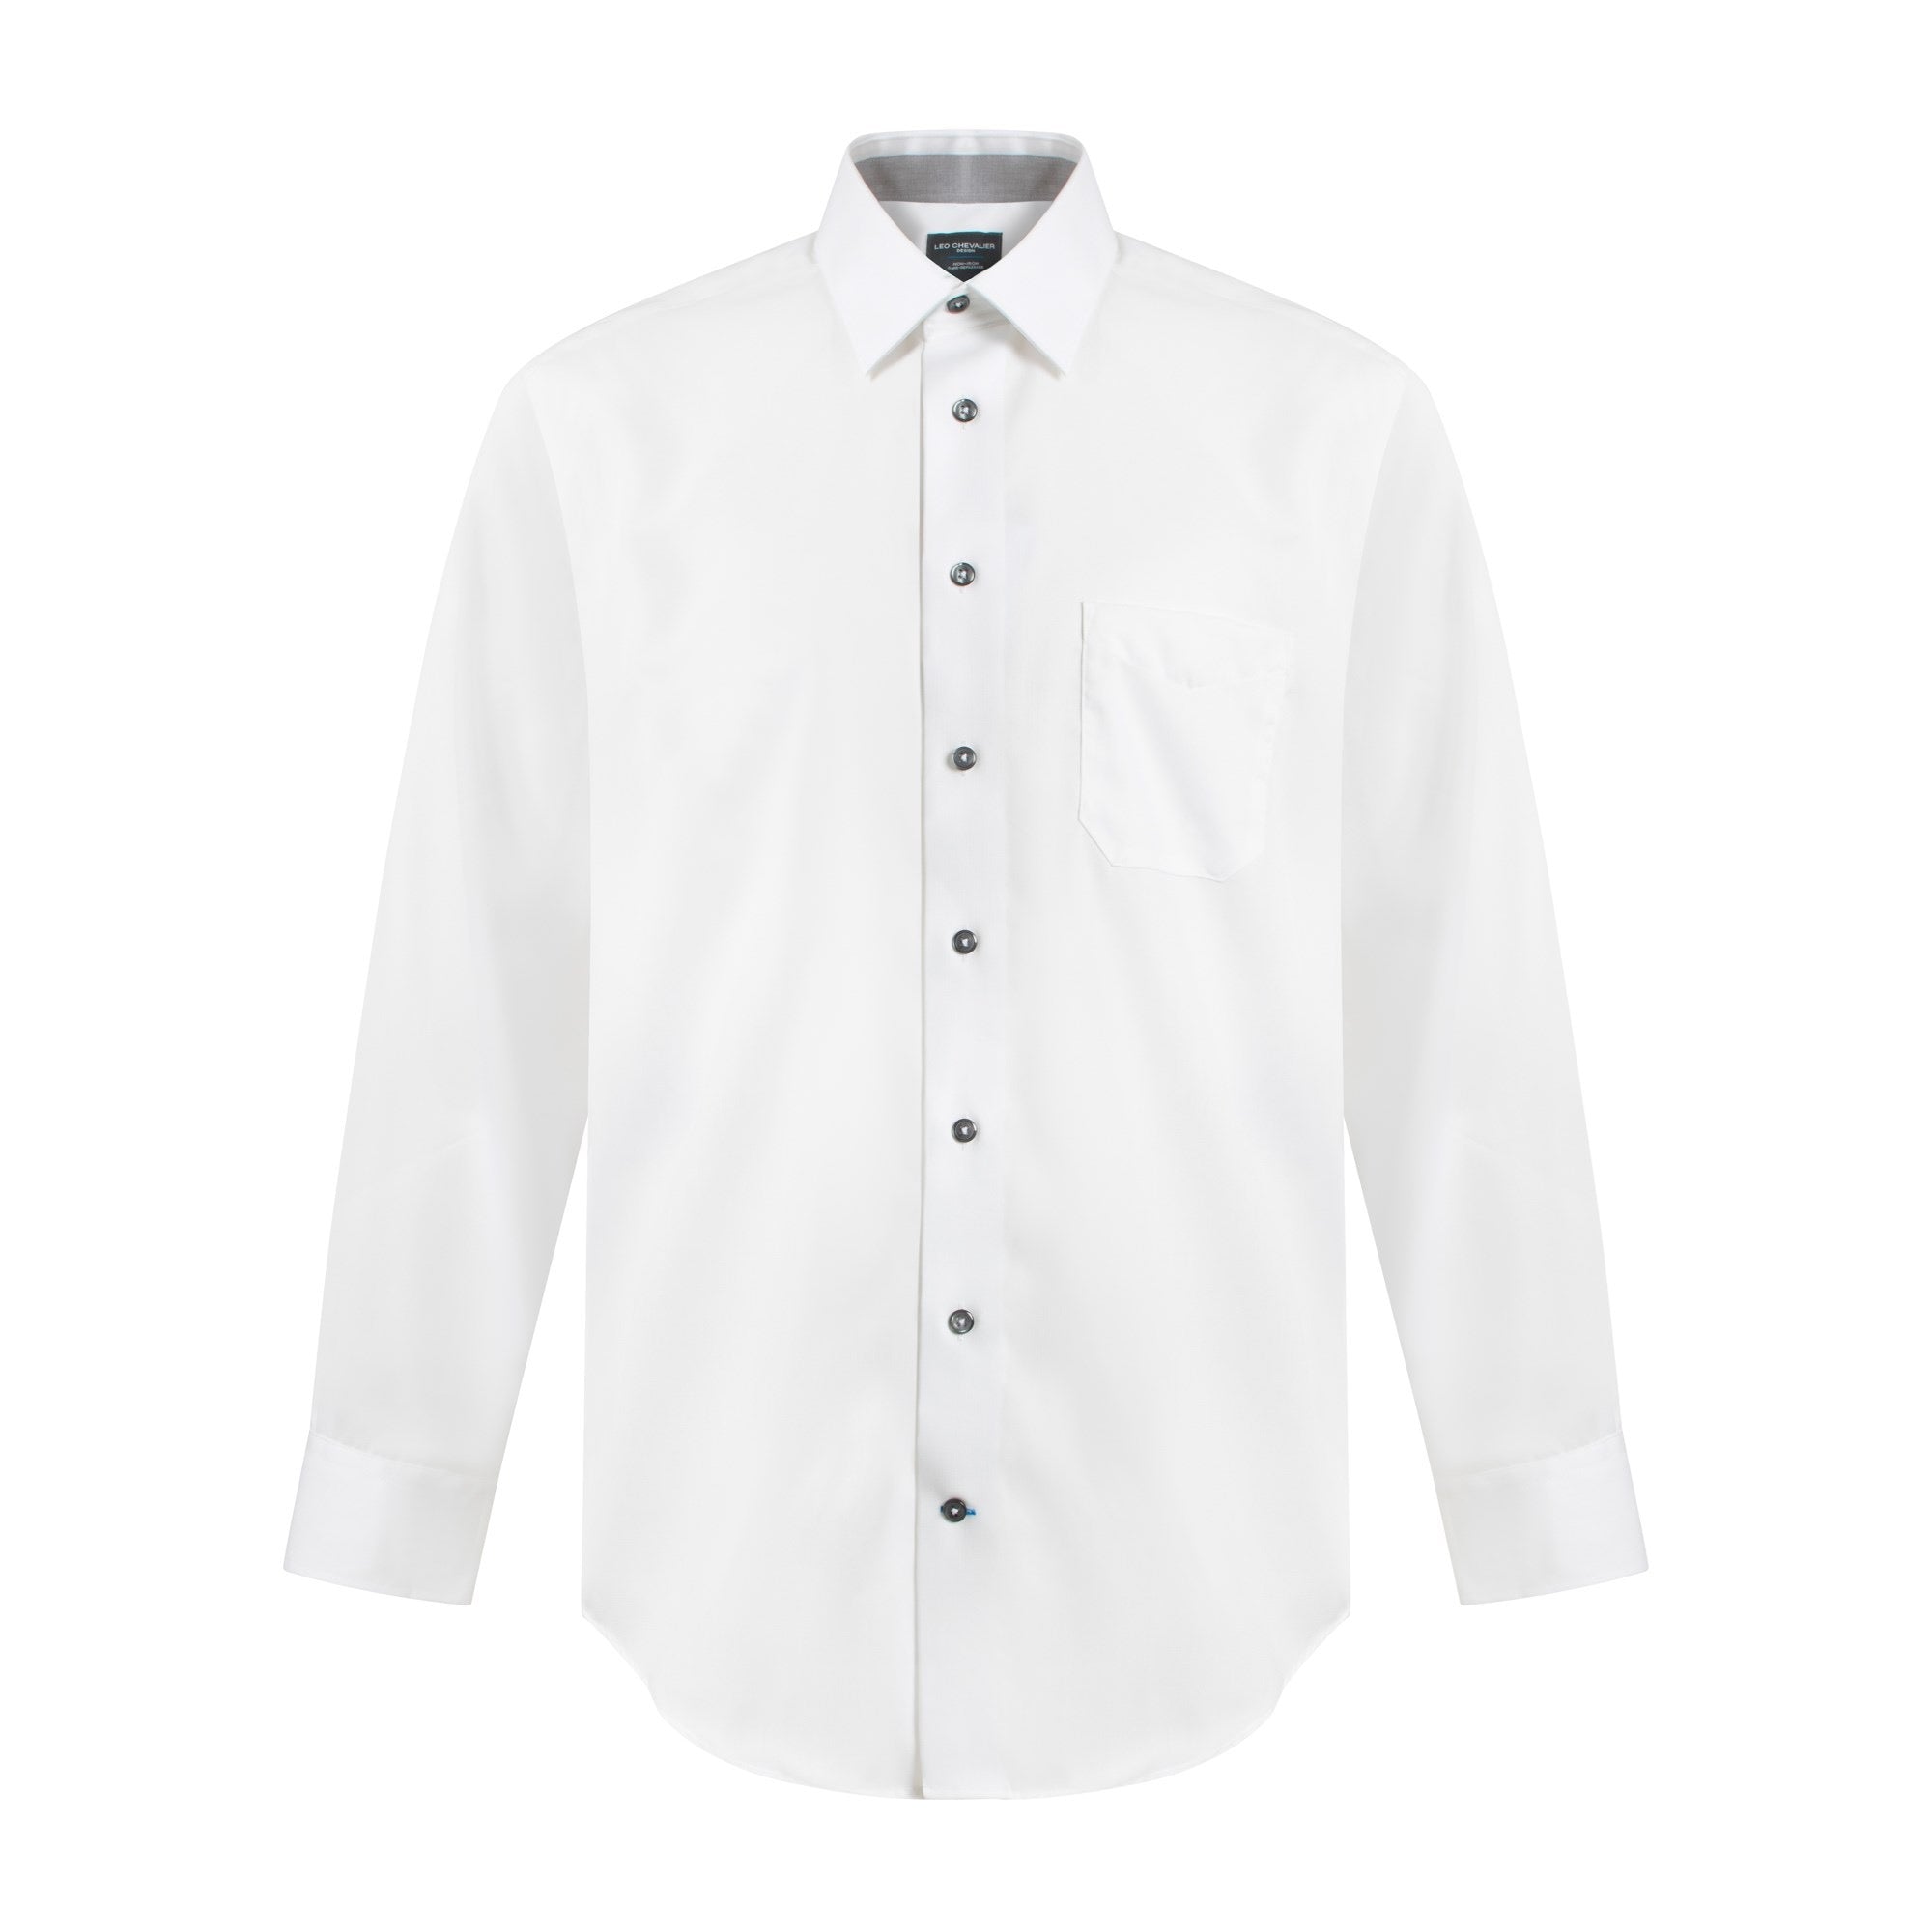 Chemise habillée coupe classique 100% coton sans repassage pour homme - Style 225121